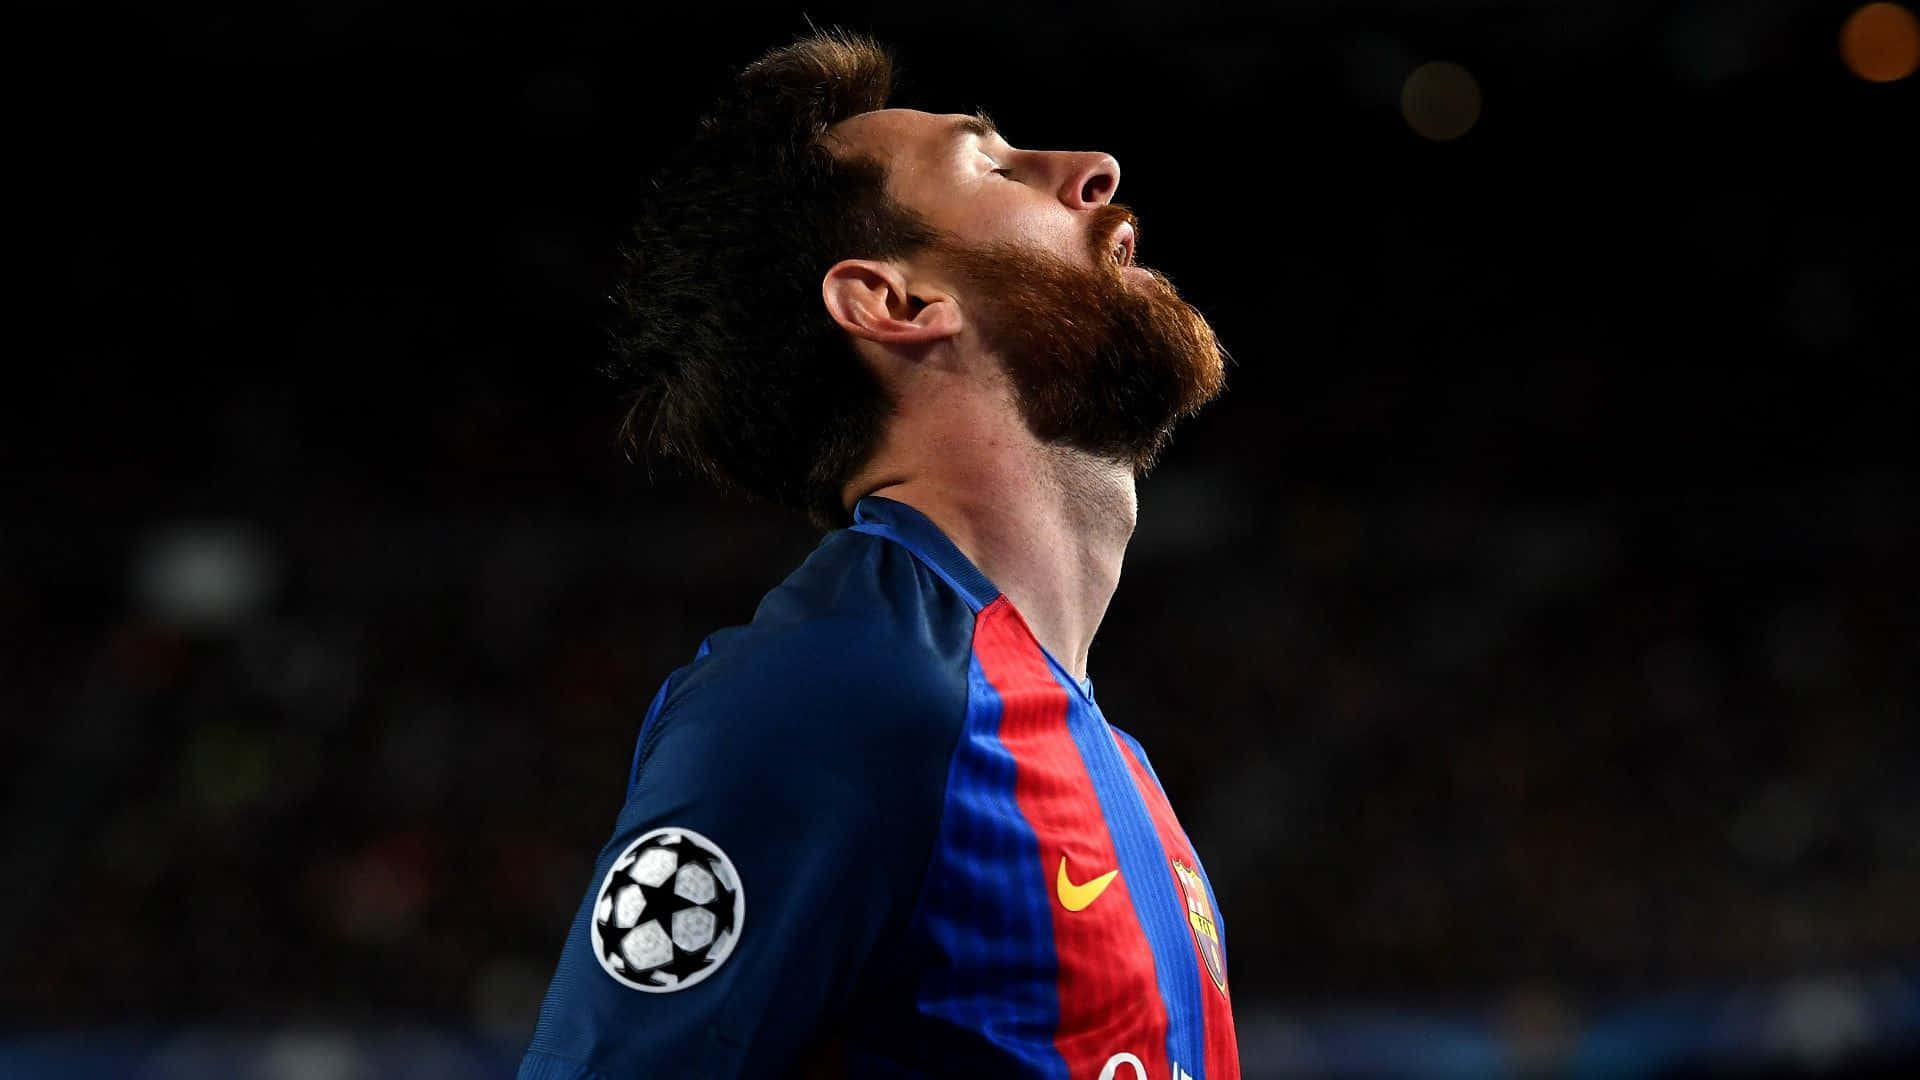 Immaginelionel Messi - Il Leggendario Calciatore